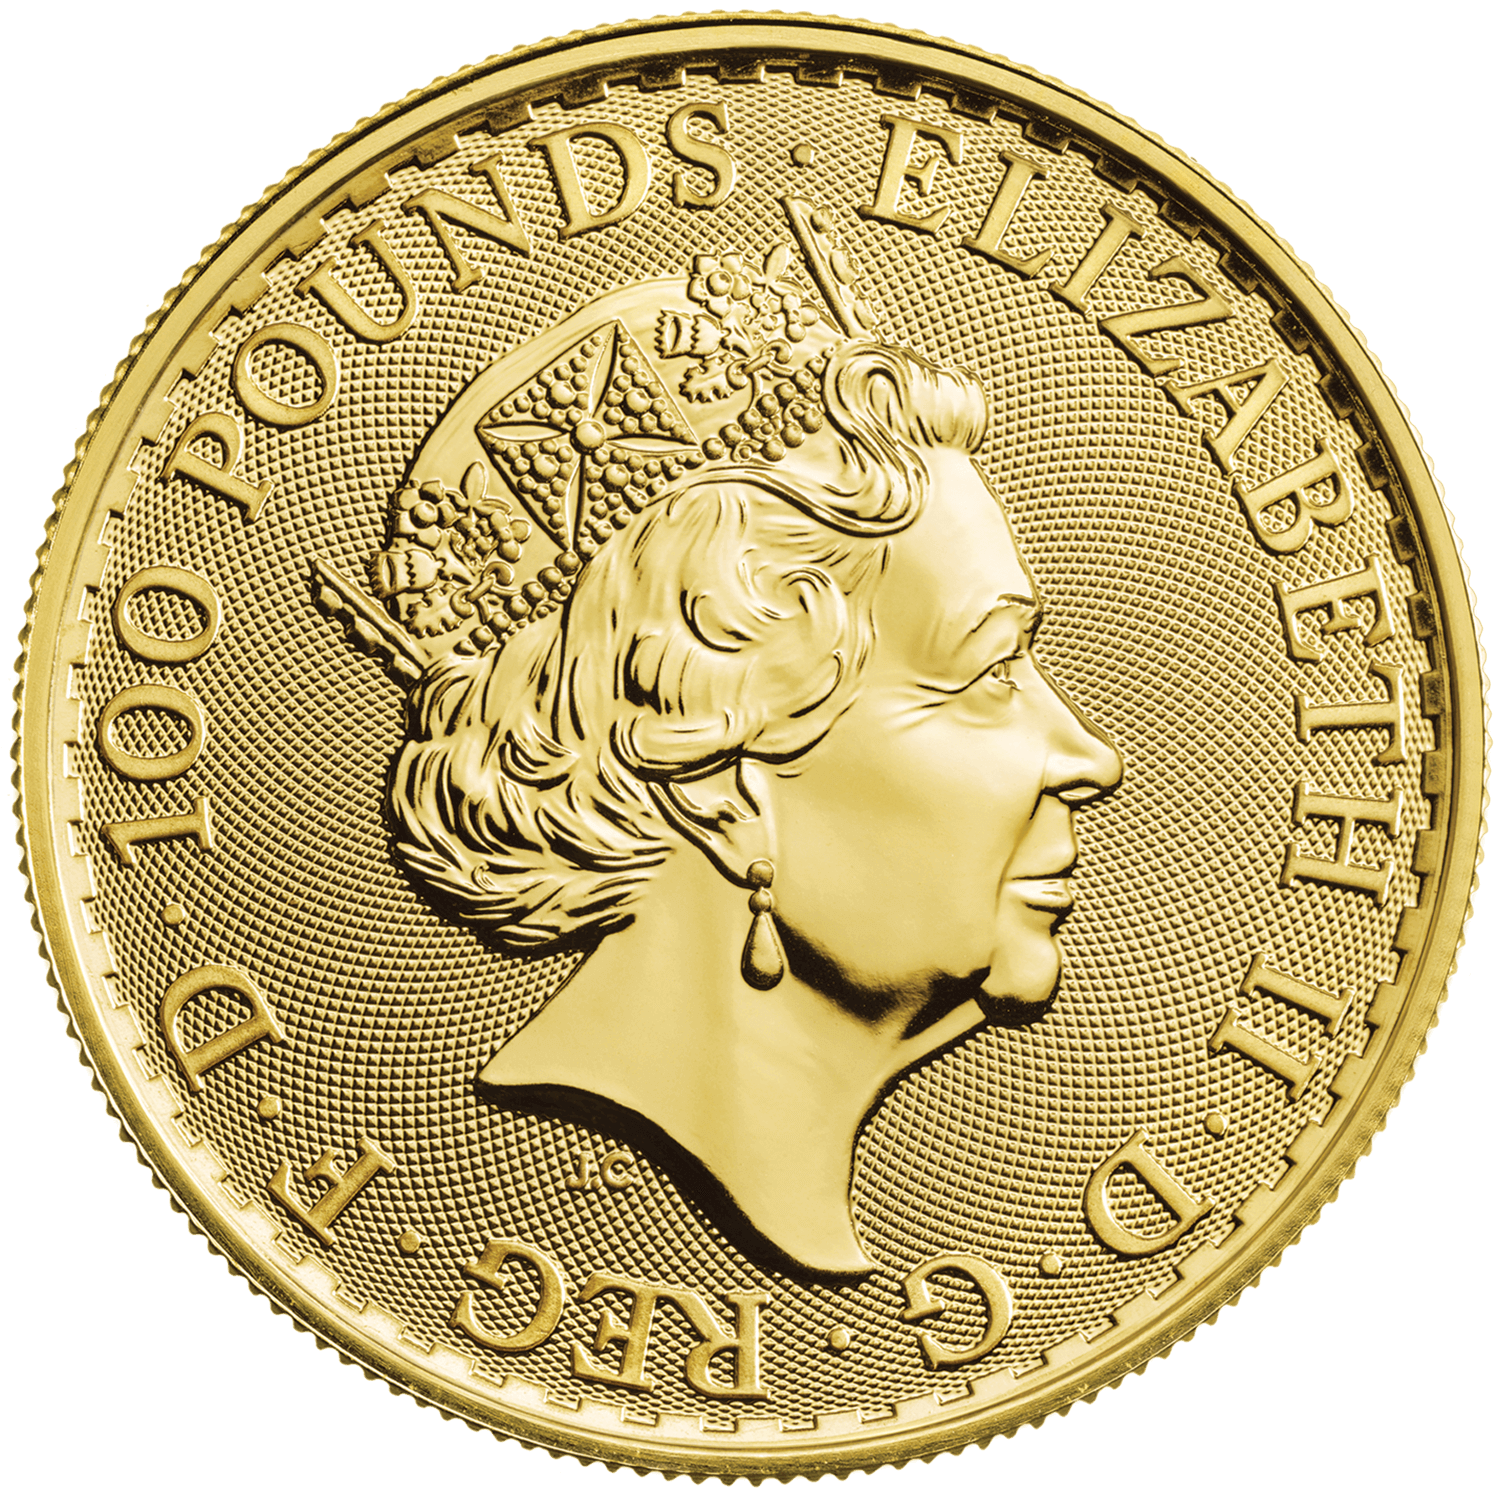 Britannia 2020 1 oz Gold Bullion Coin | The Royal Mint